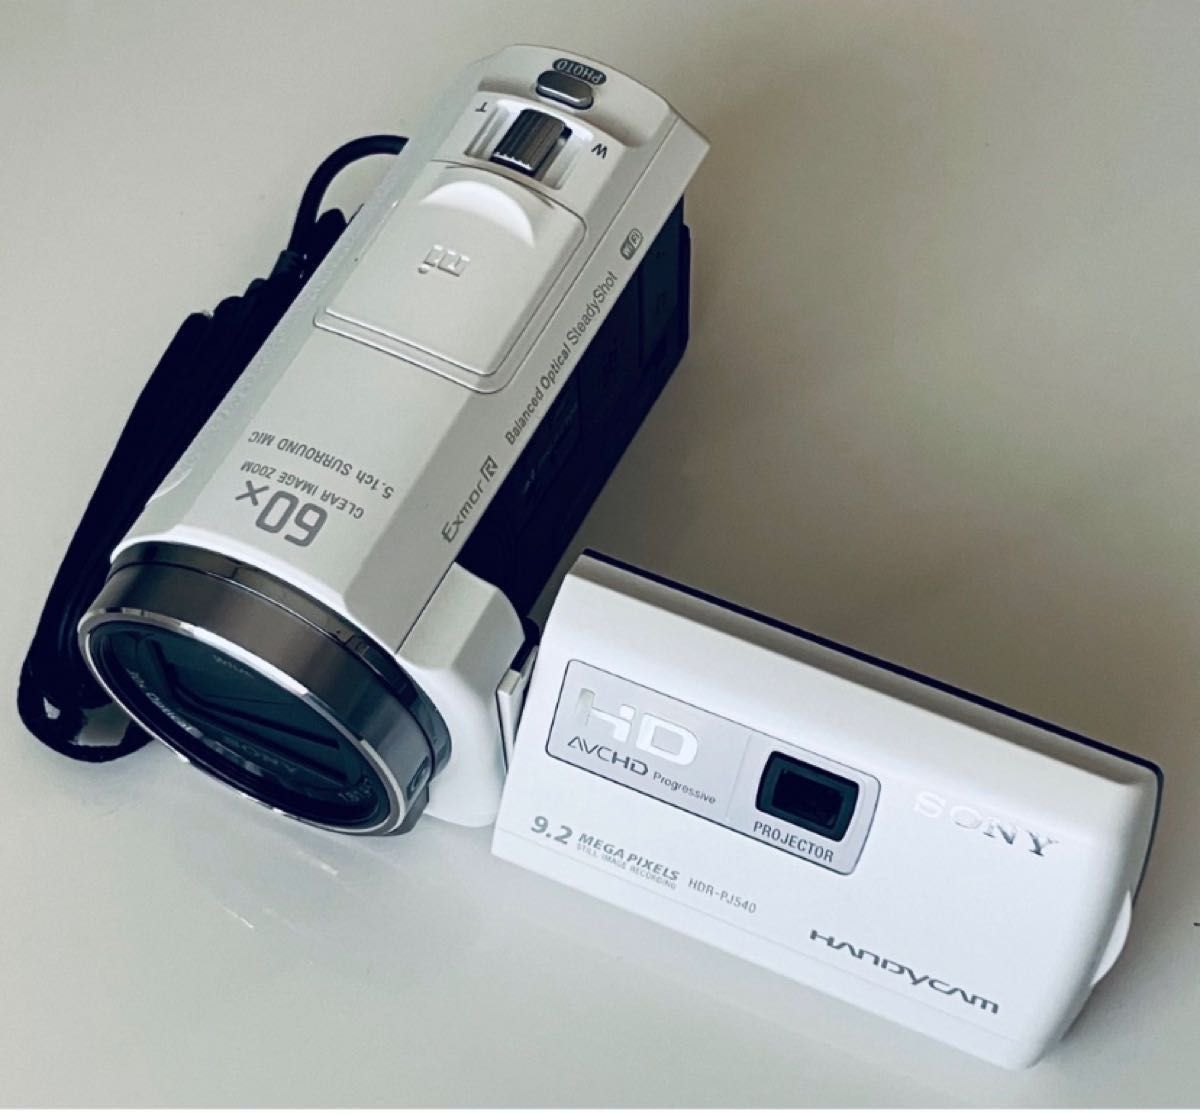 ソニー SONY ビデオカメラ Handycam PJ540 内蔵メモリ32GB ブラウン